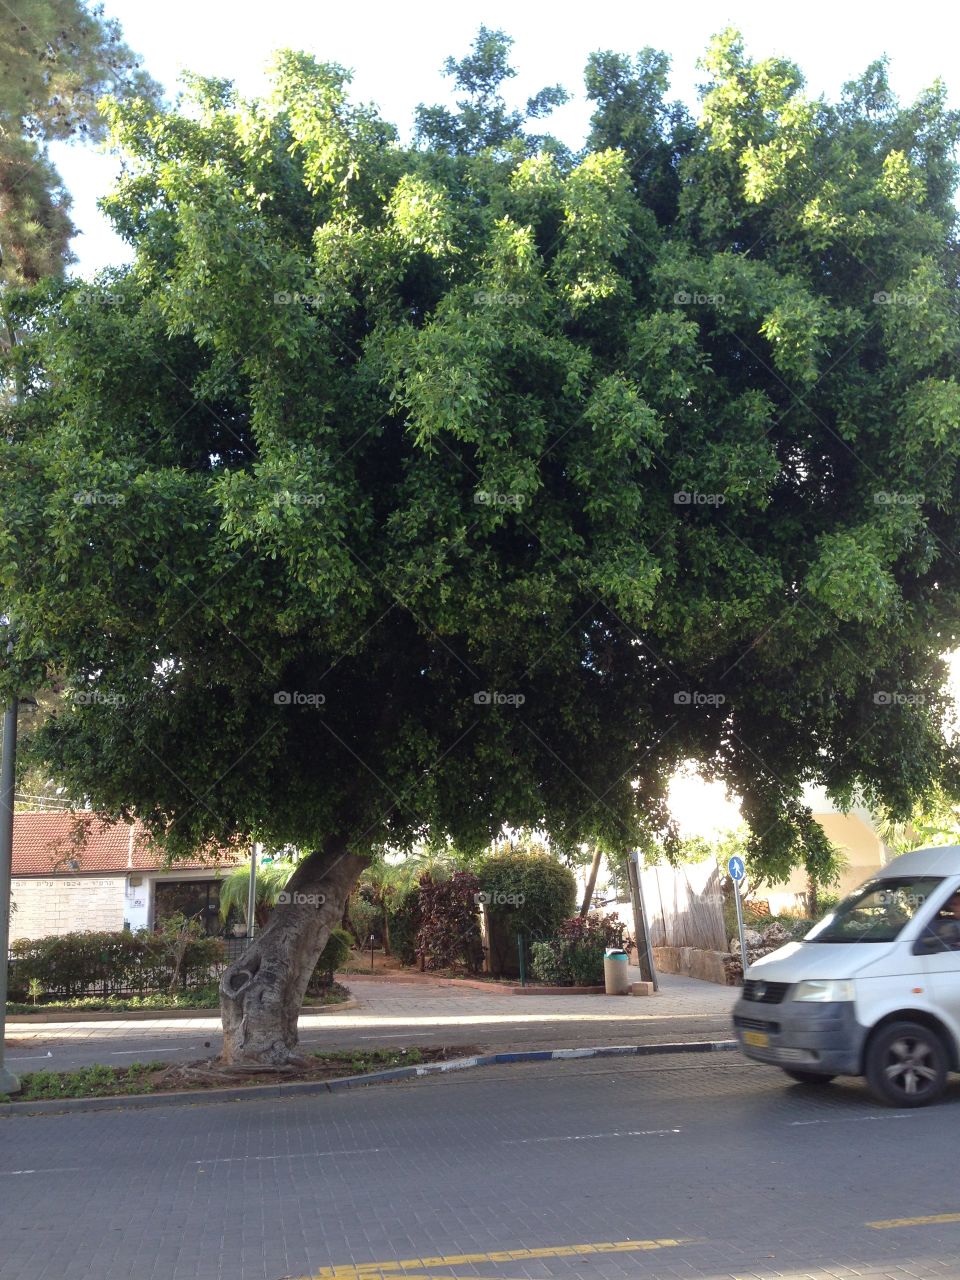 Big green tree